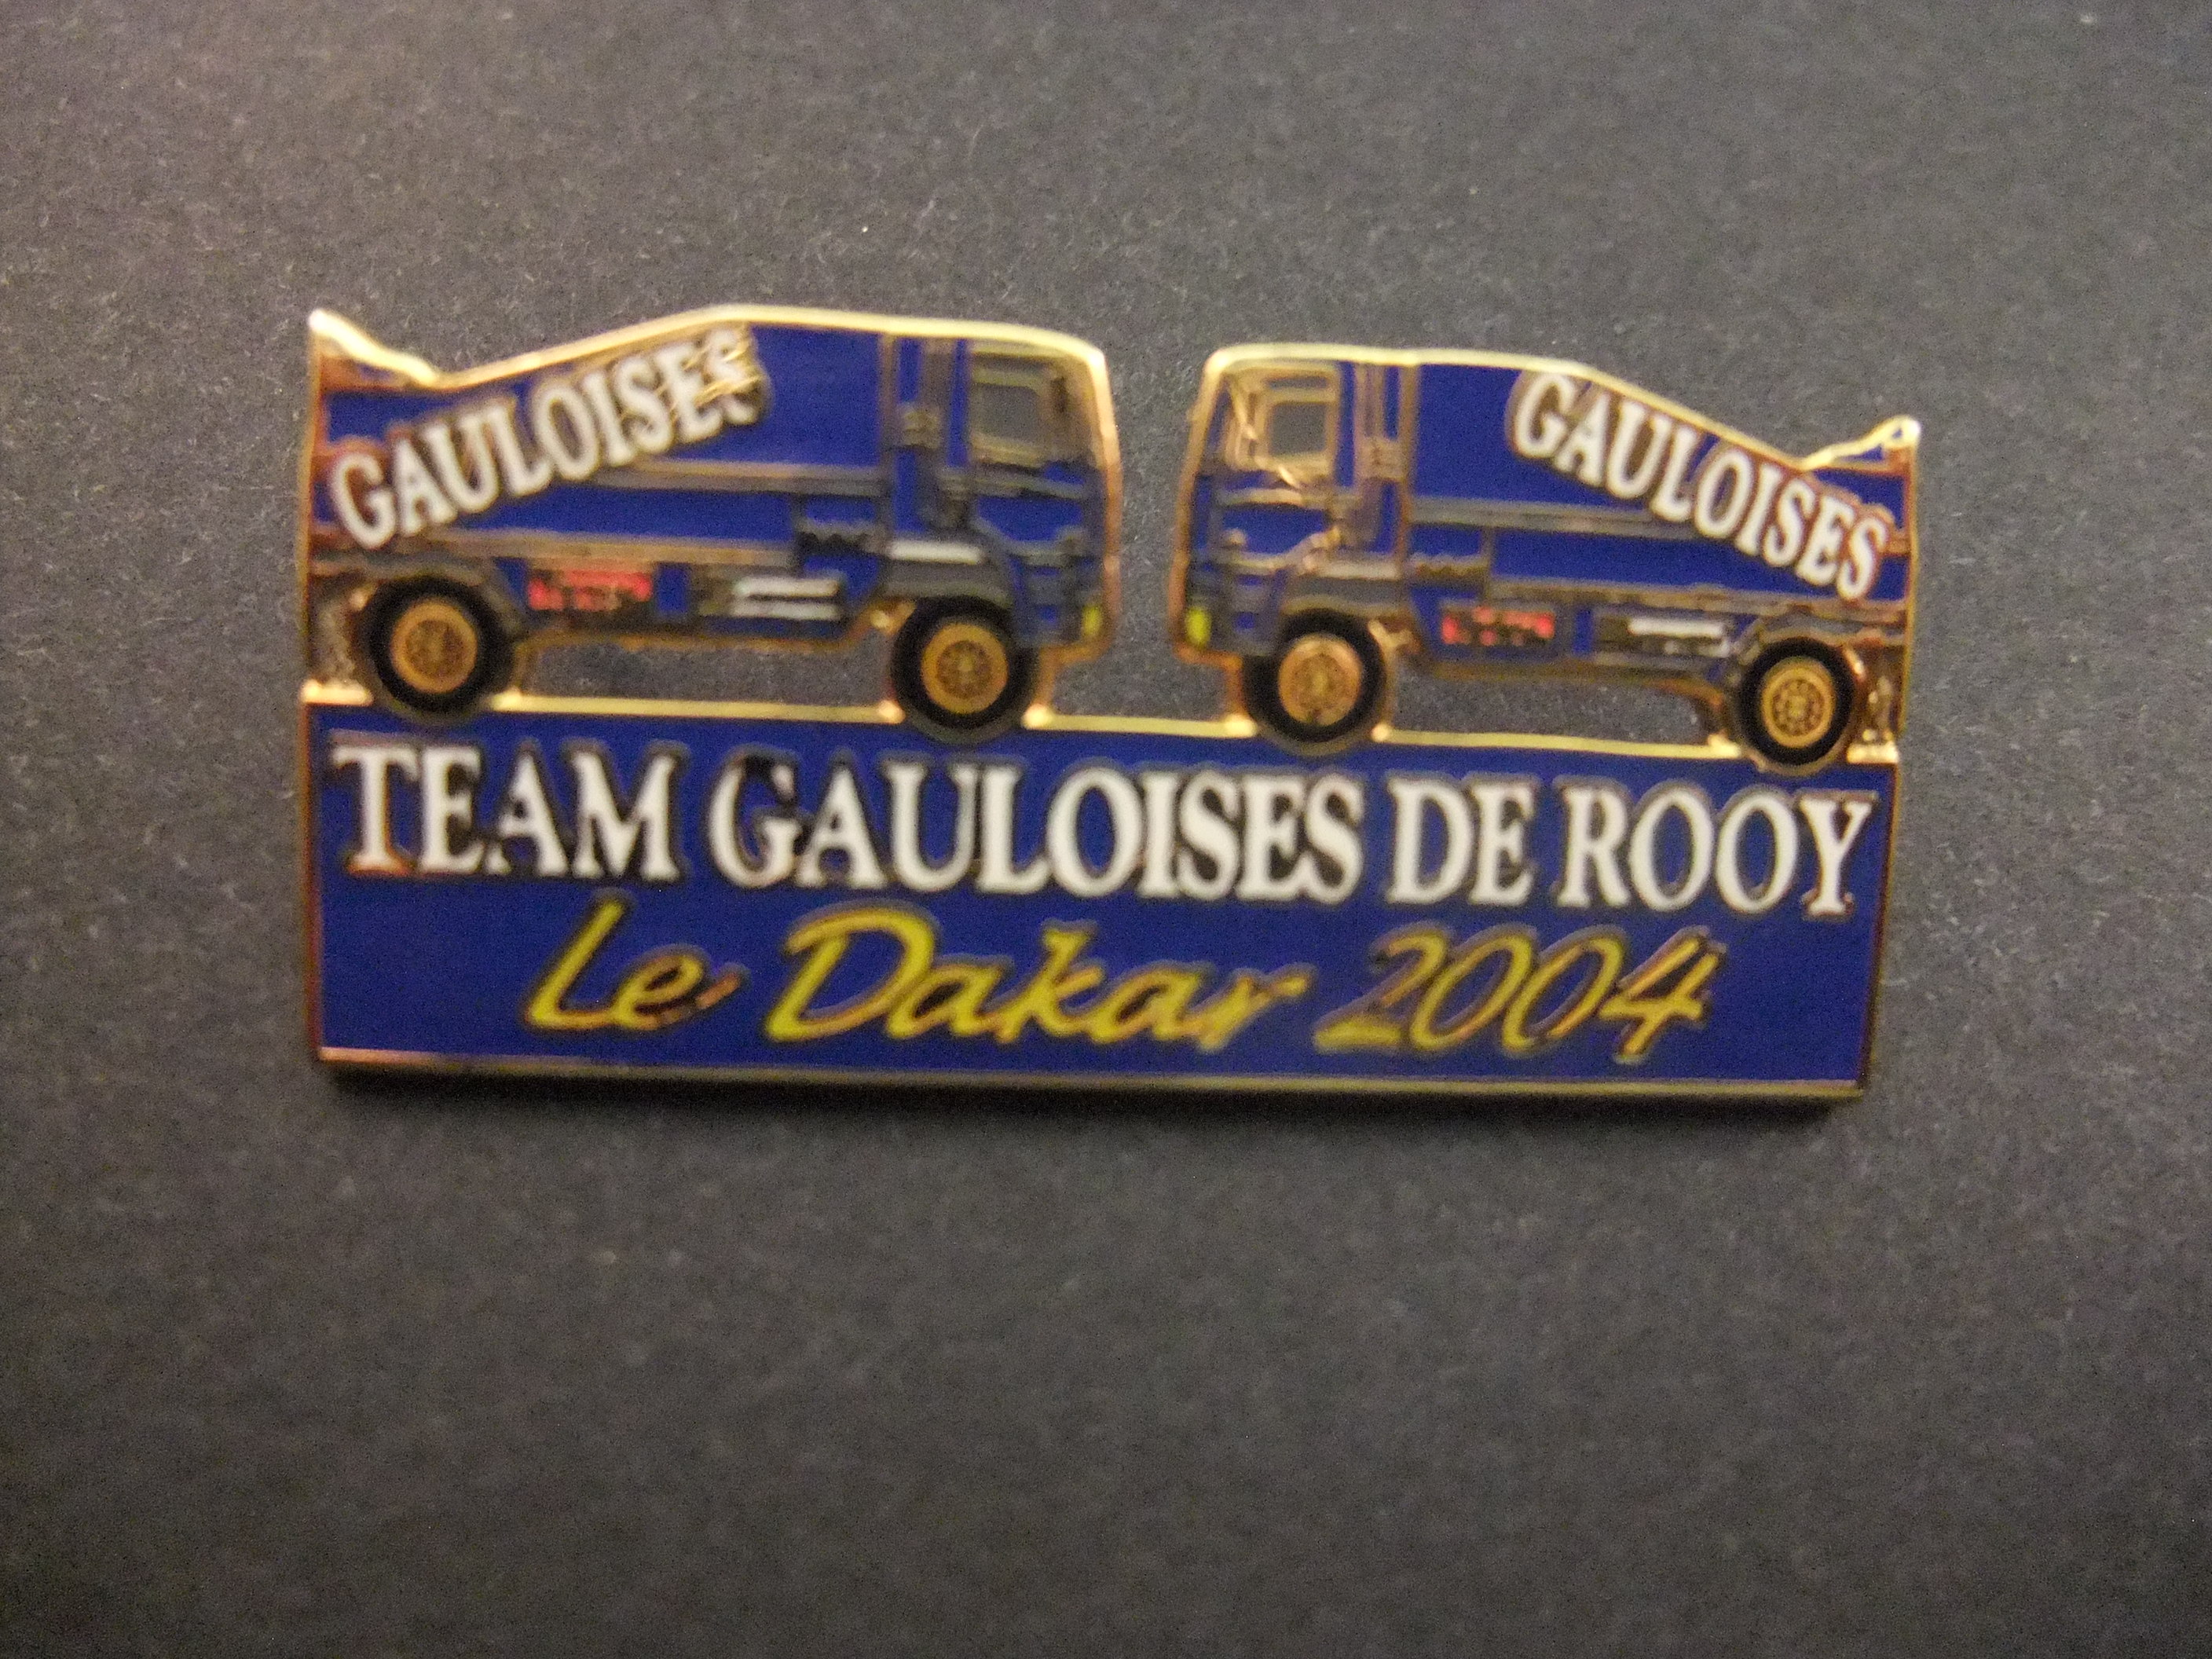 Paris-Dakar Rally 2004 team Gauloises De Rooy Ginaf truck